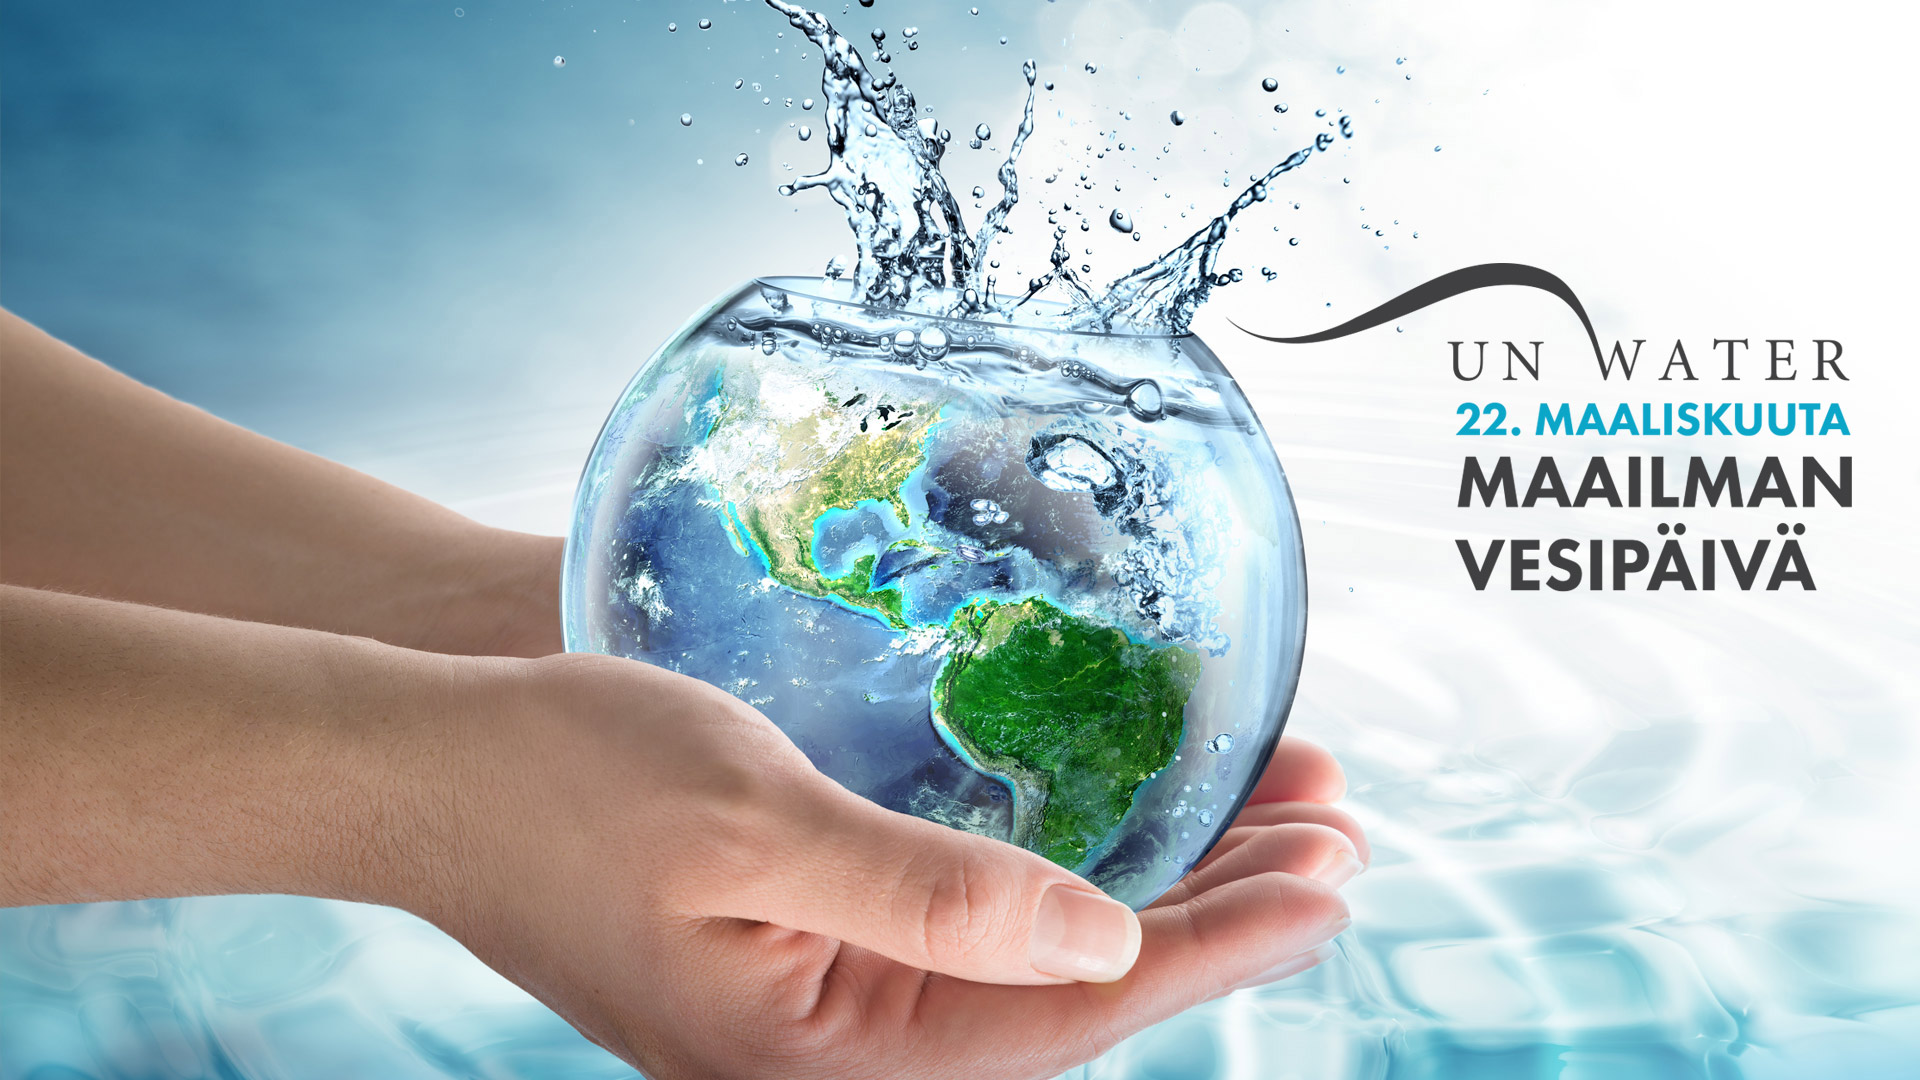 kansikuva maailman vesipäivä 2023 artikkelille, jossa kädet pitävät vedellä täytettyä lasipalloa, jonka sisällä maailma kelluu.